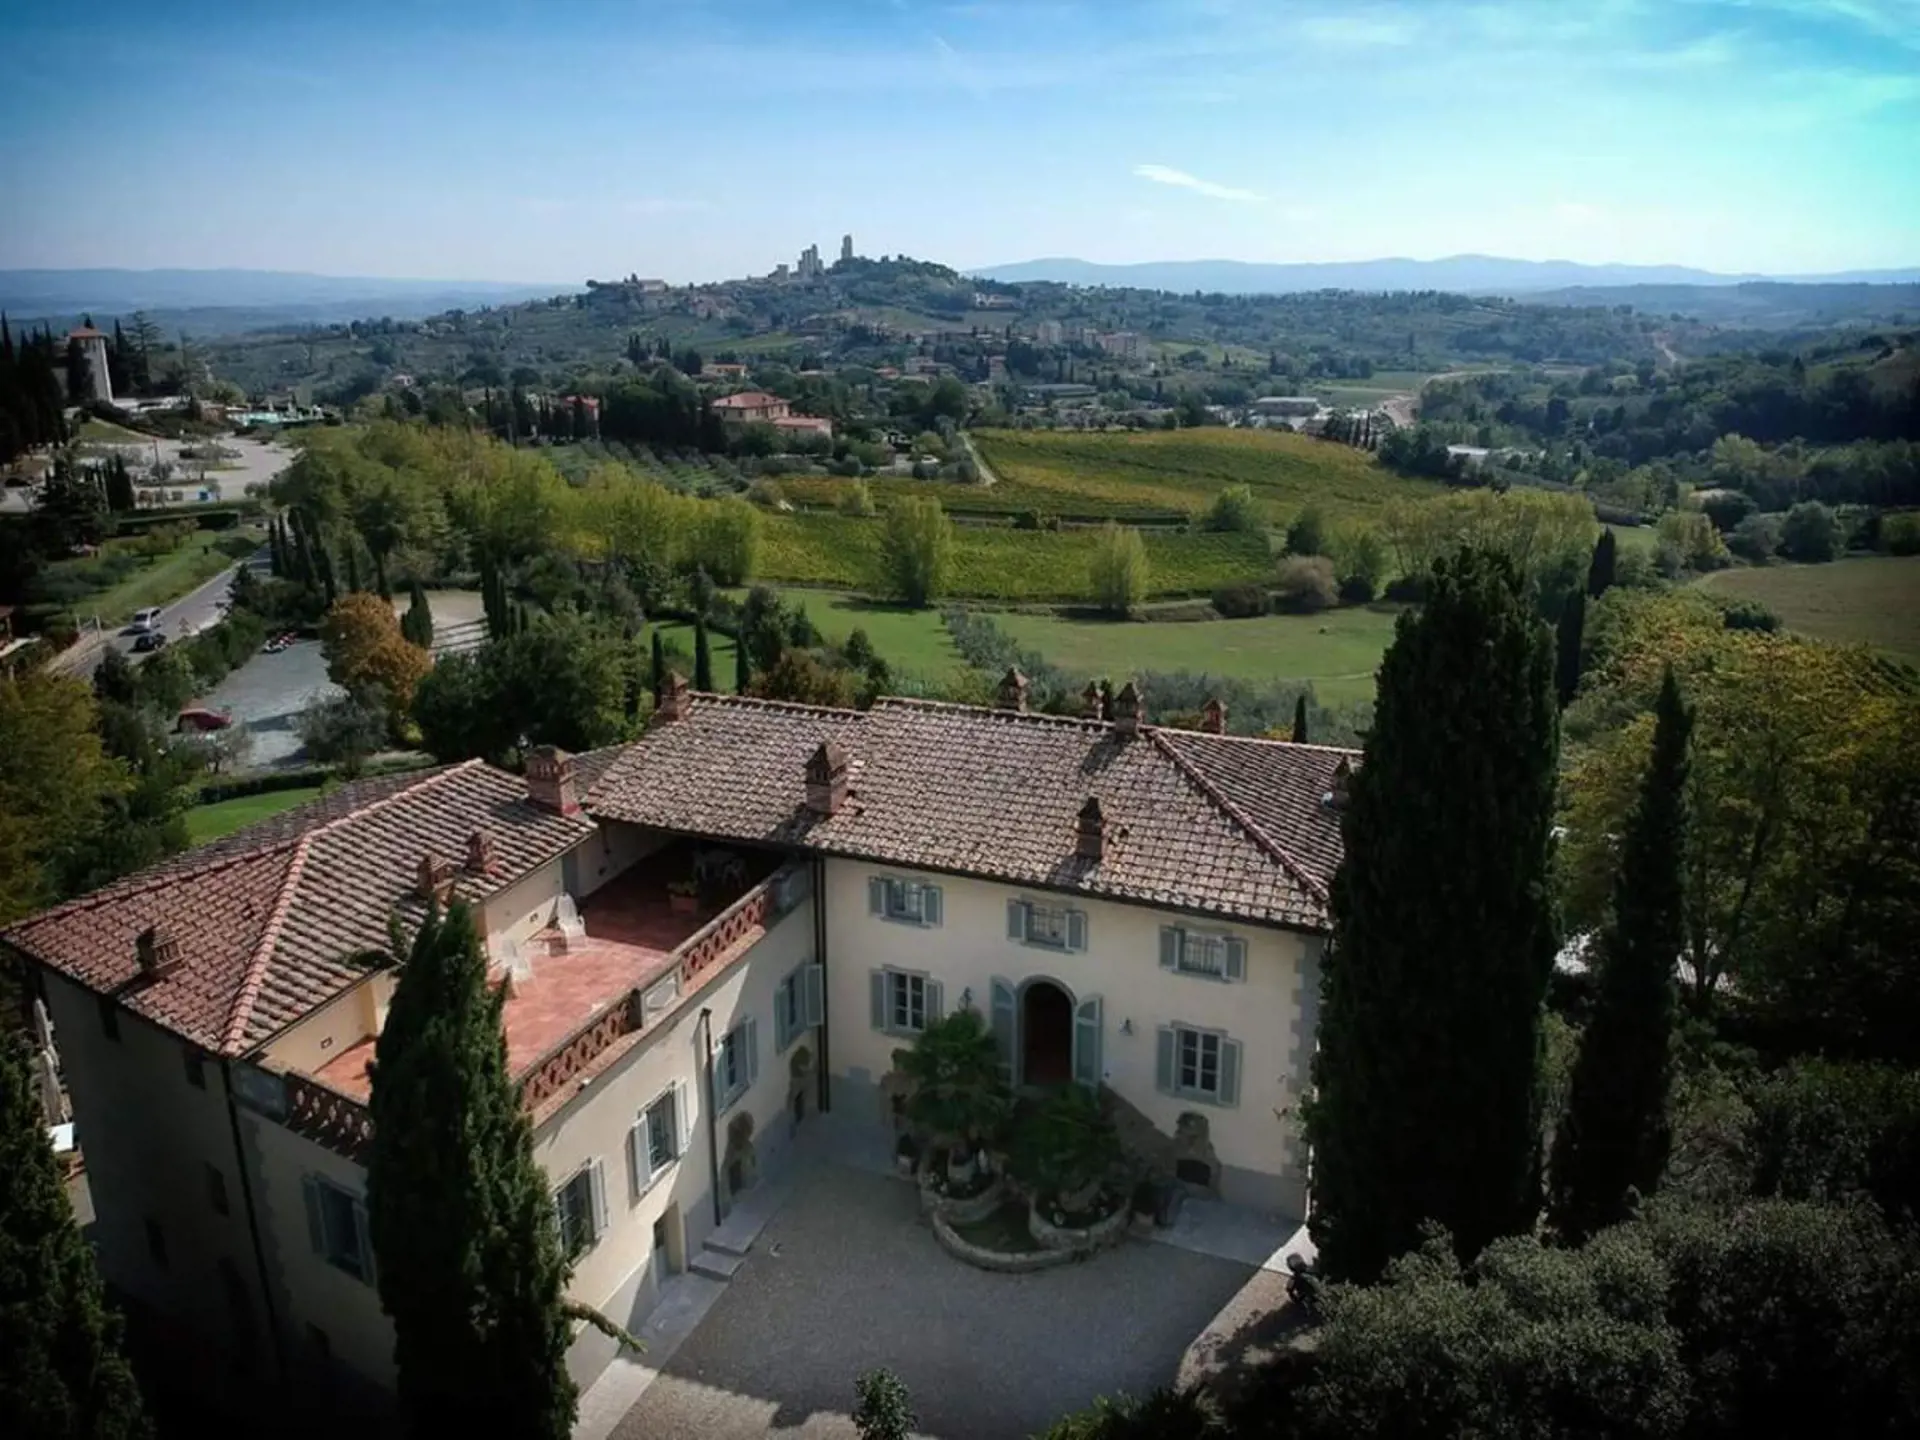 Ditt hotell i Toscana ligger strax utanför San Gimignano och har den finaste utsikten över staden.